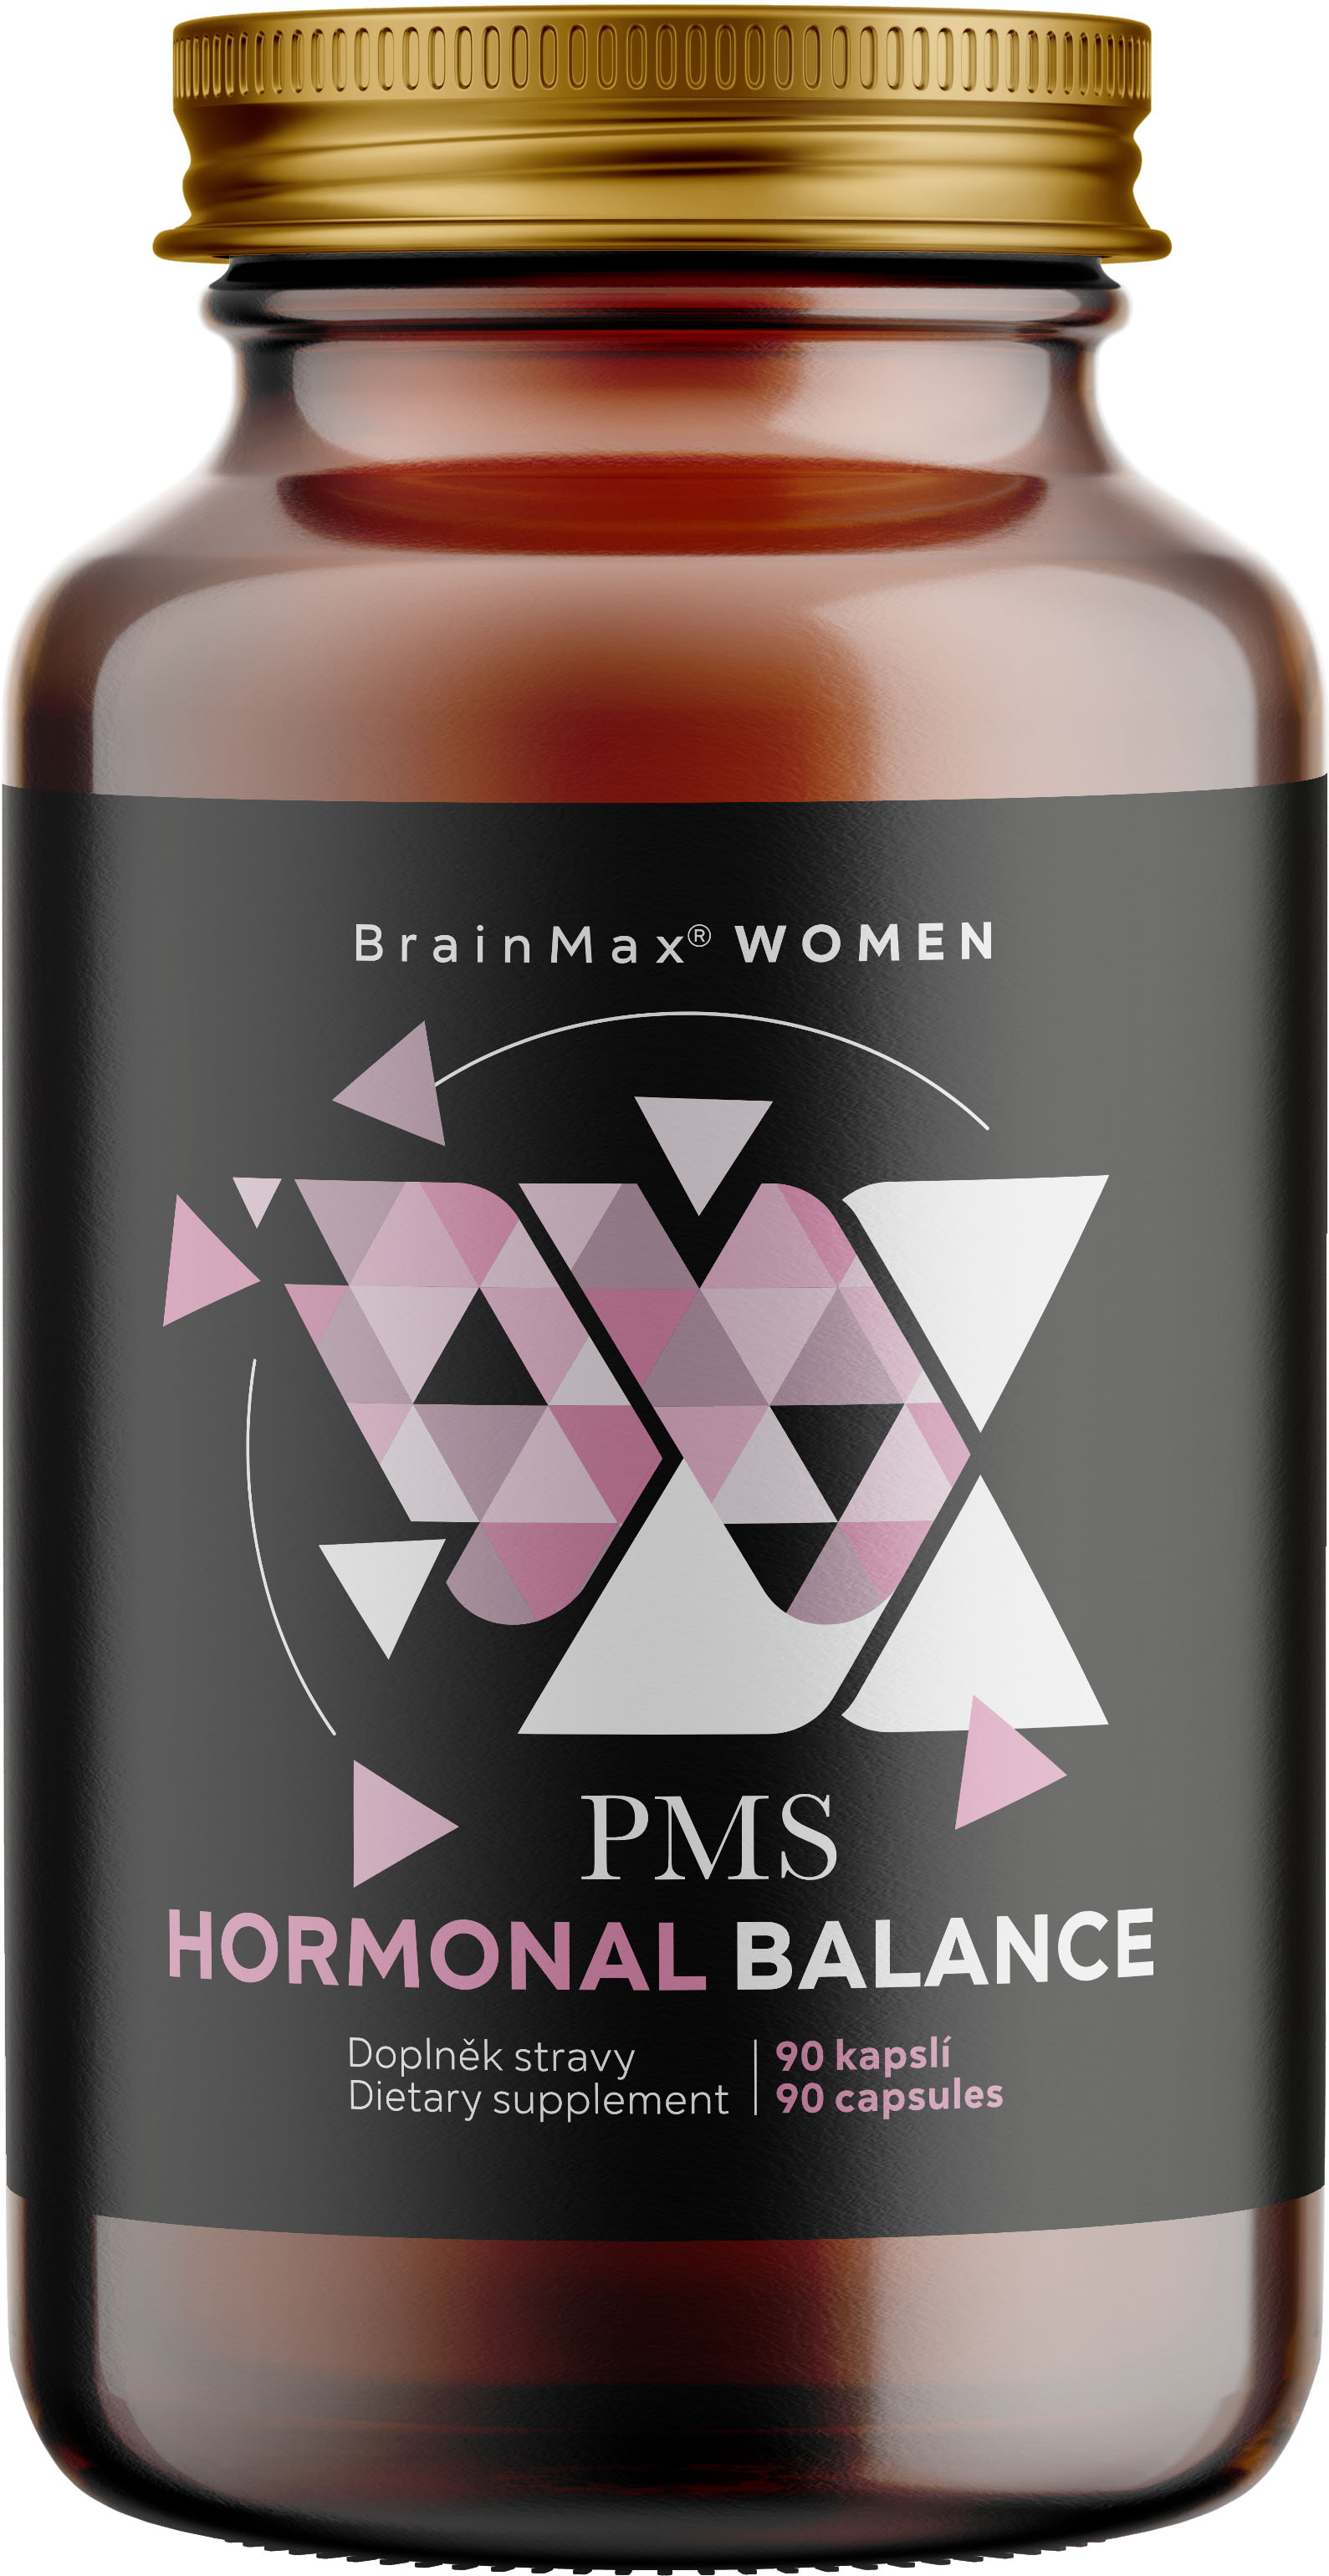 BrainMax Women PMS Hormonal Balance, 90 rostlinných kapslí Vědecky ověřený komplex pro hormonální rovnováhu u žen, 30 dávek, doplněk stravy